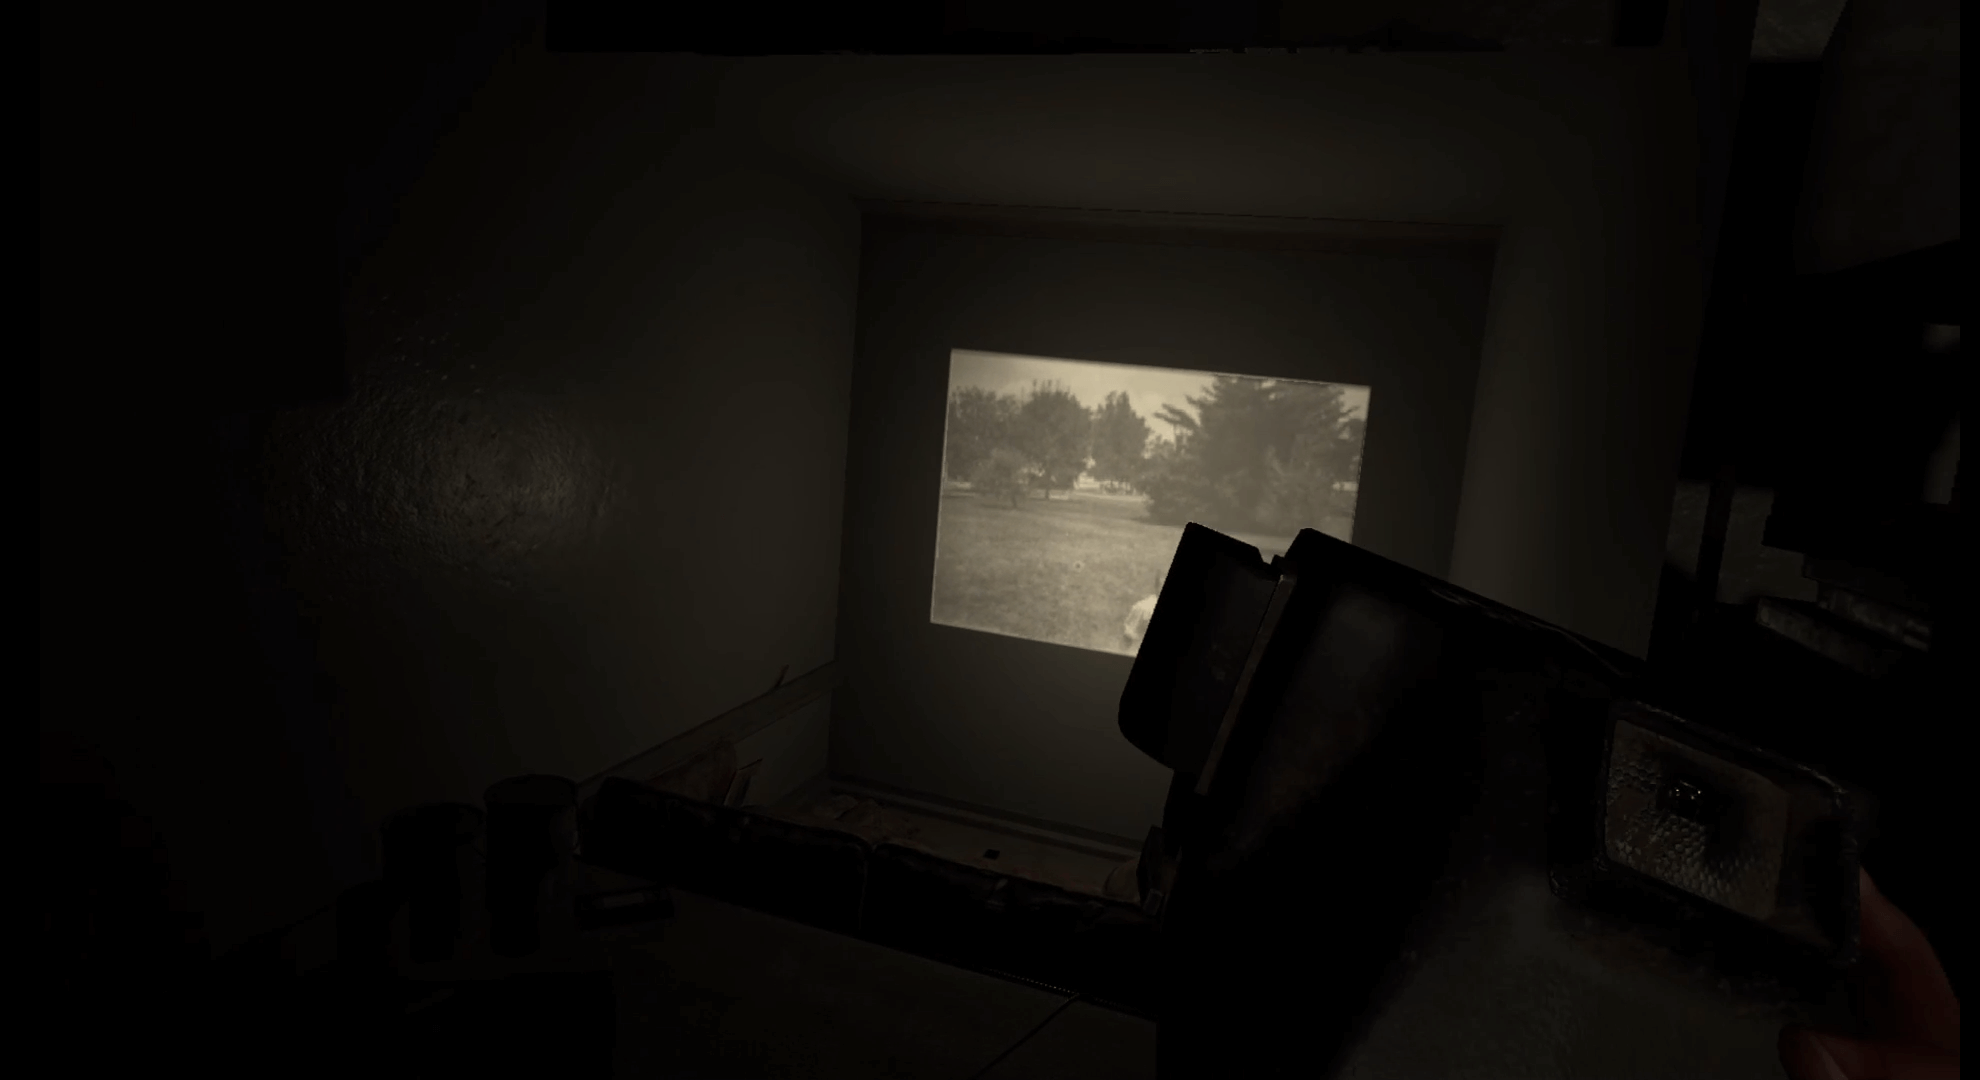 capture d'écran de Madison VR.  un appareil photo polaroïd est tendu devant.  devant nous se trouve une salle de cinéma permettant de projeter des photos de famille à partir d'un projecteur.  sur le mur une photo est projetée.  la photo au dos et en blanc montre un jeune garçon sur un champ avec des arbres en arrière-plan